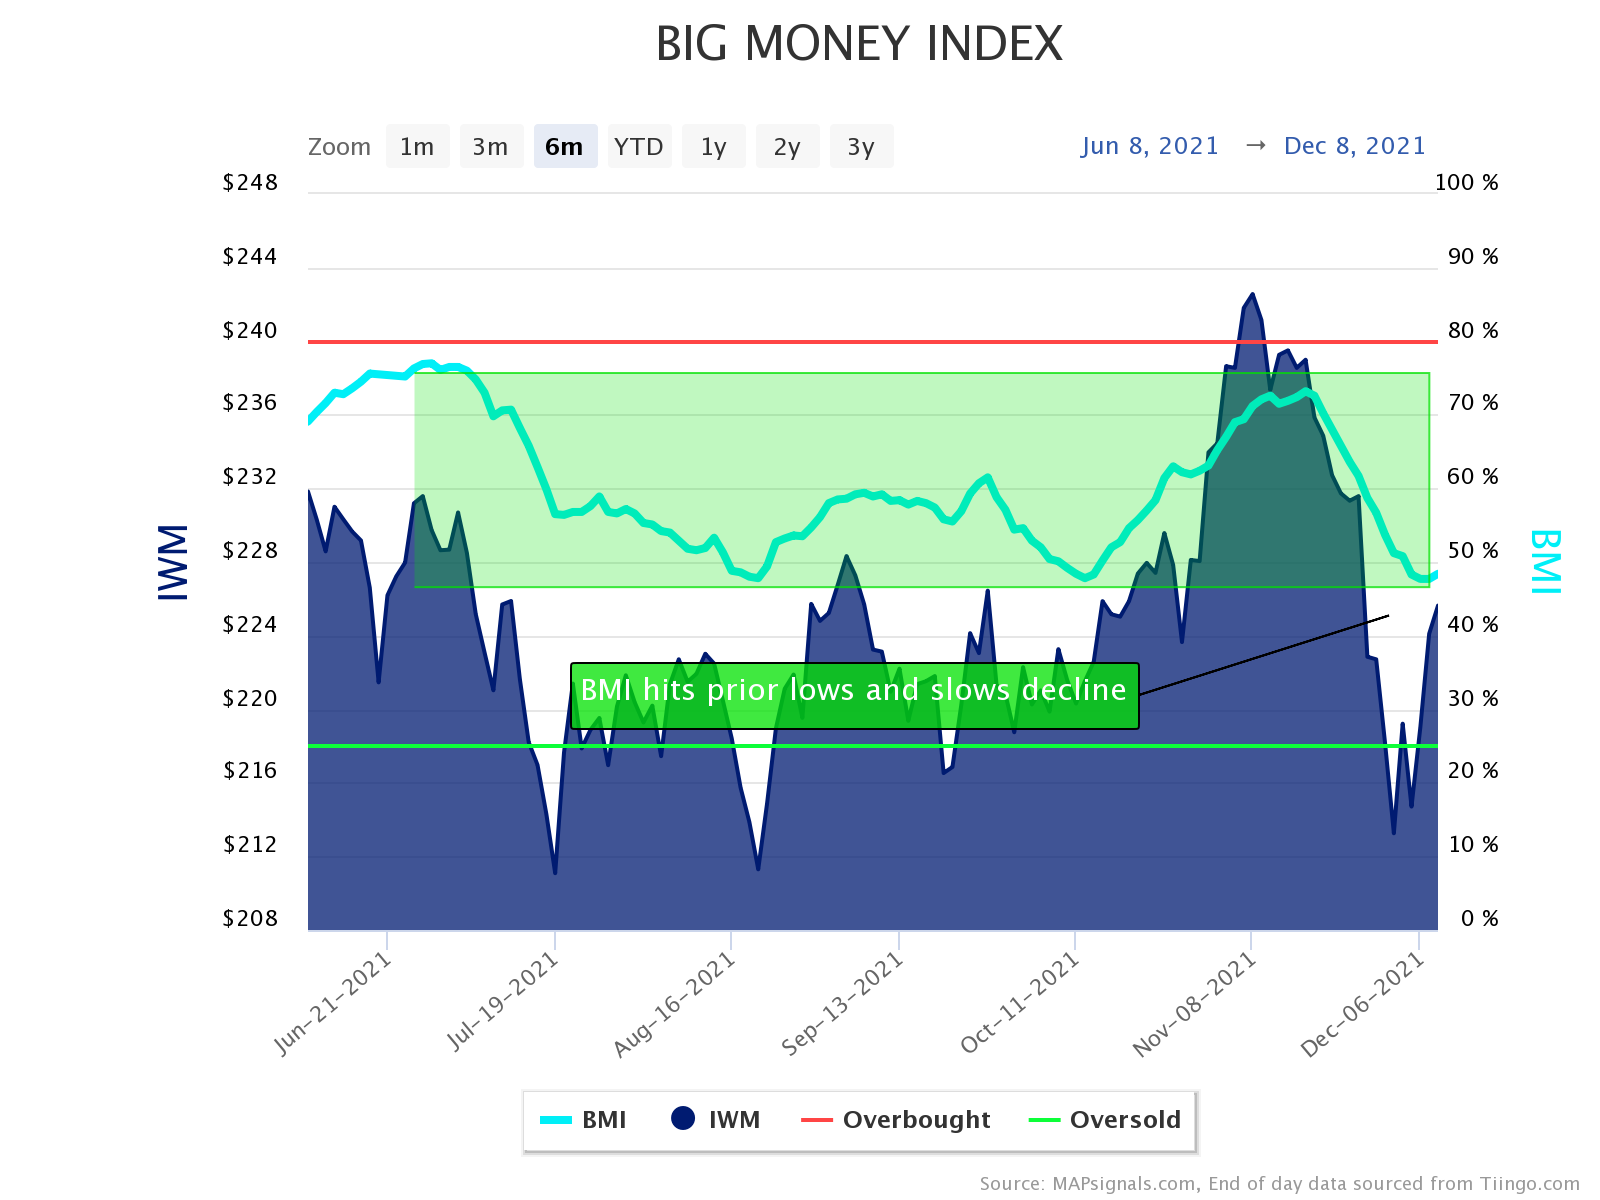 Big Money Index Slows Decline